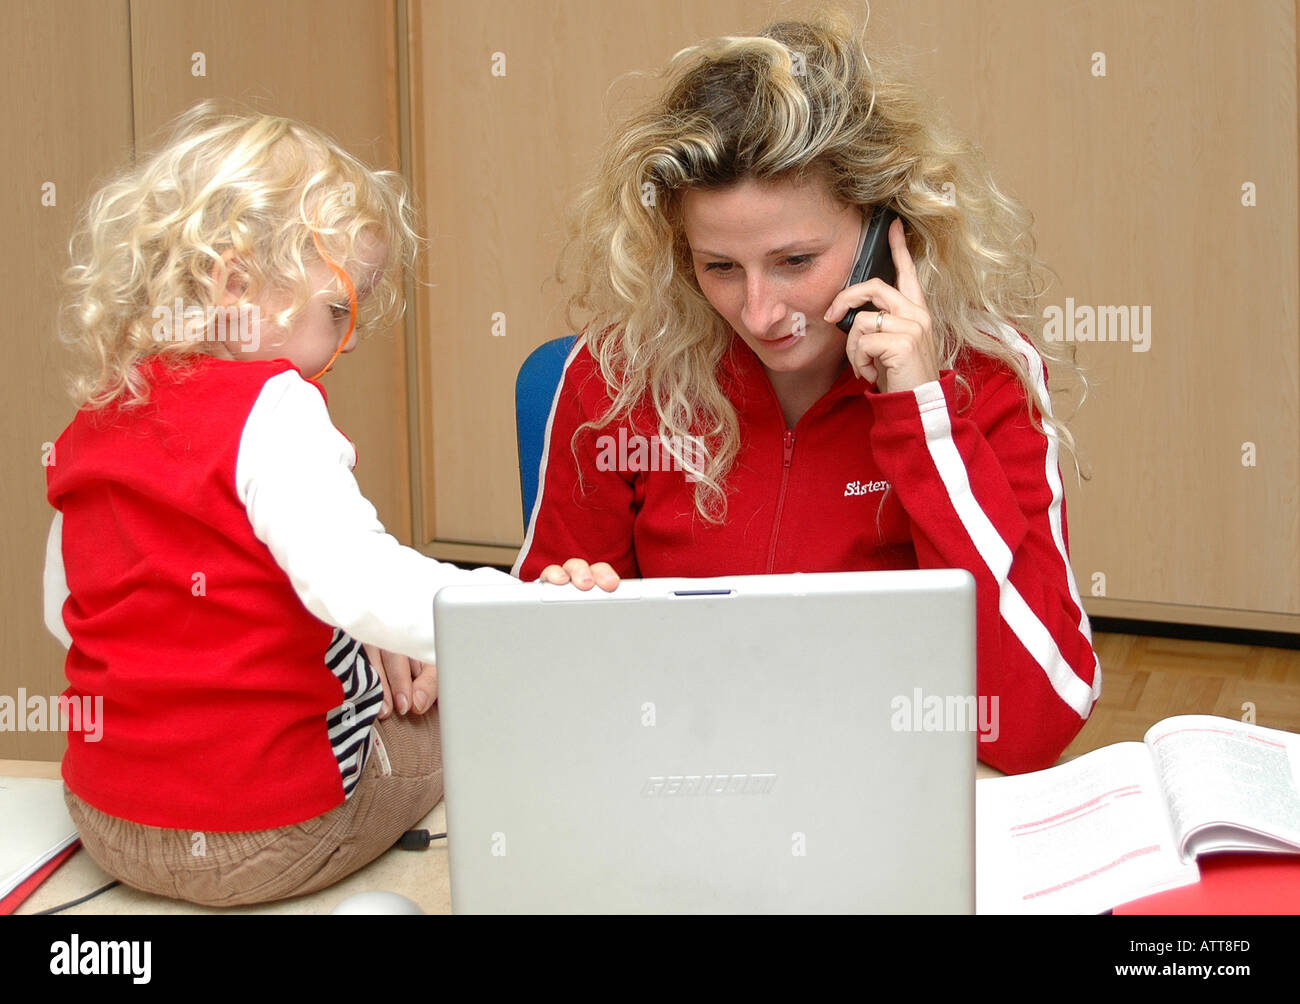 MR Arbeitende Mutter mit Kind am Computer MR Working mother with child in office Bildagentur online Begsteiger Stock Photo